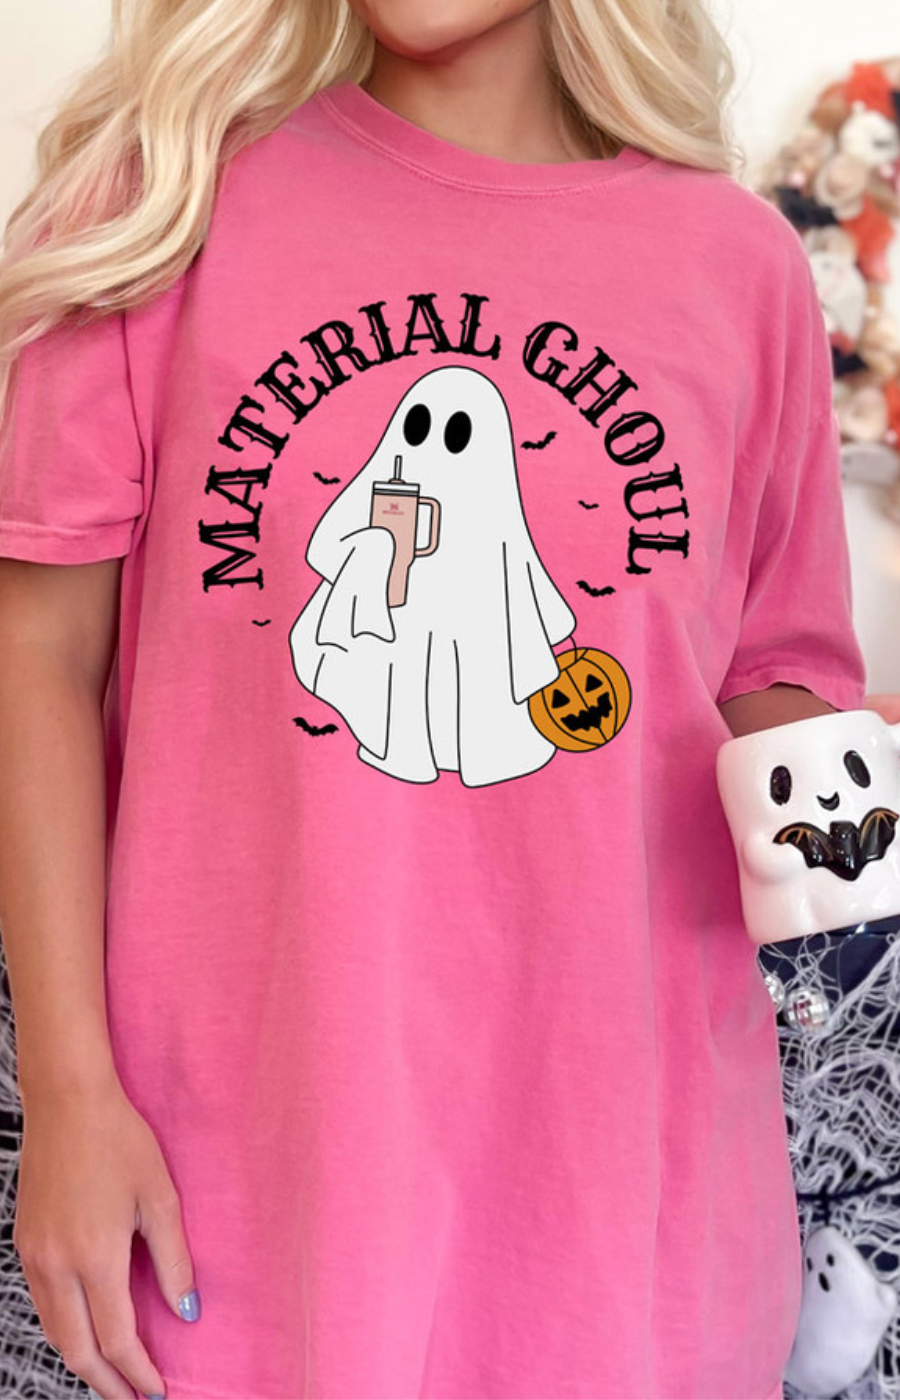 Material Ghoul Tee